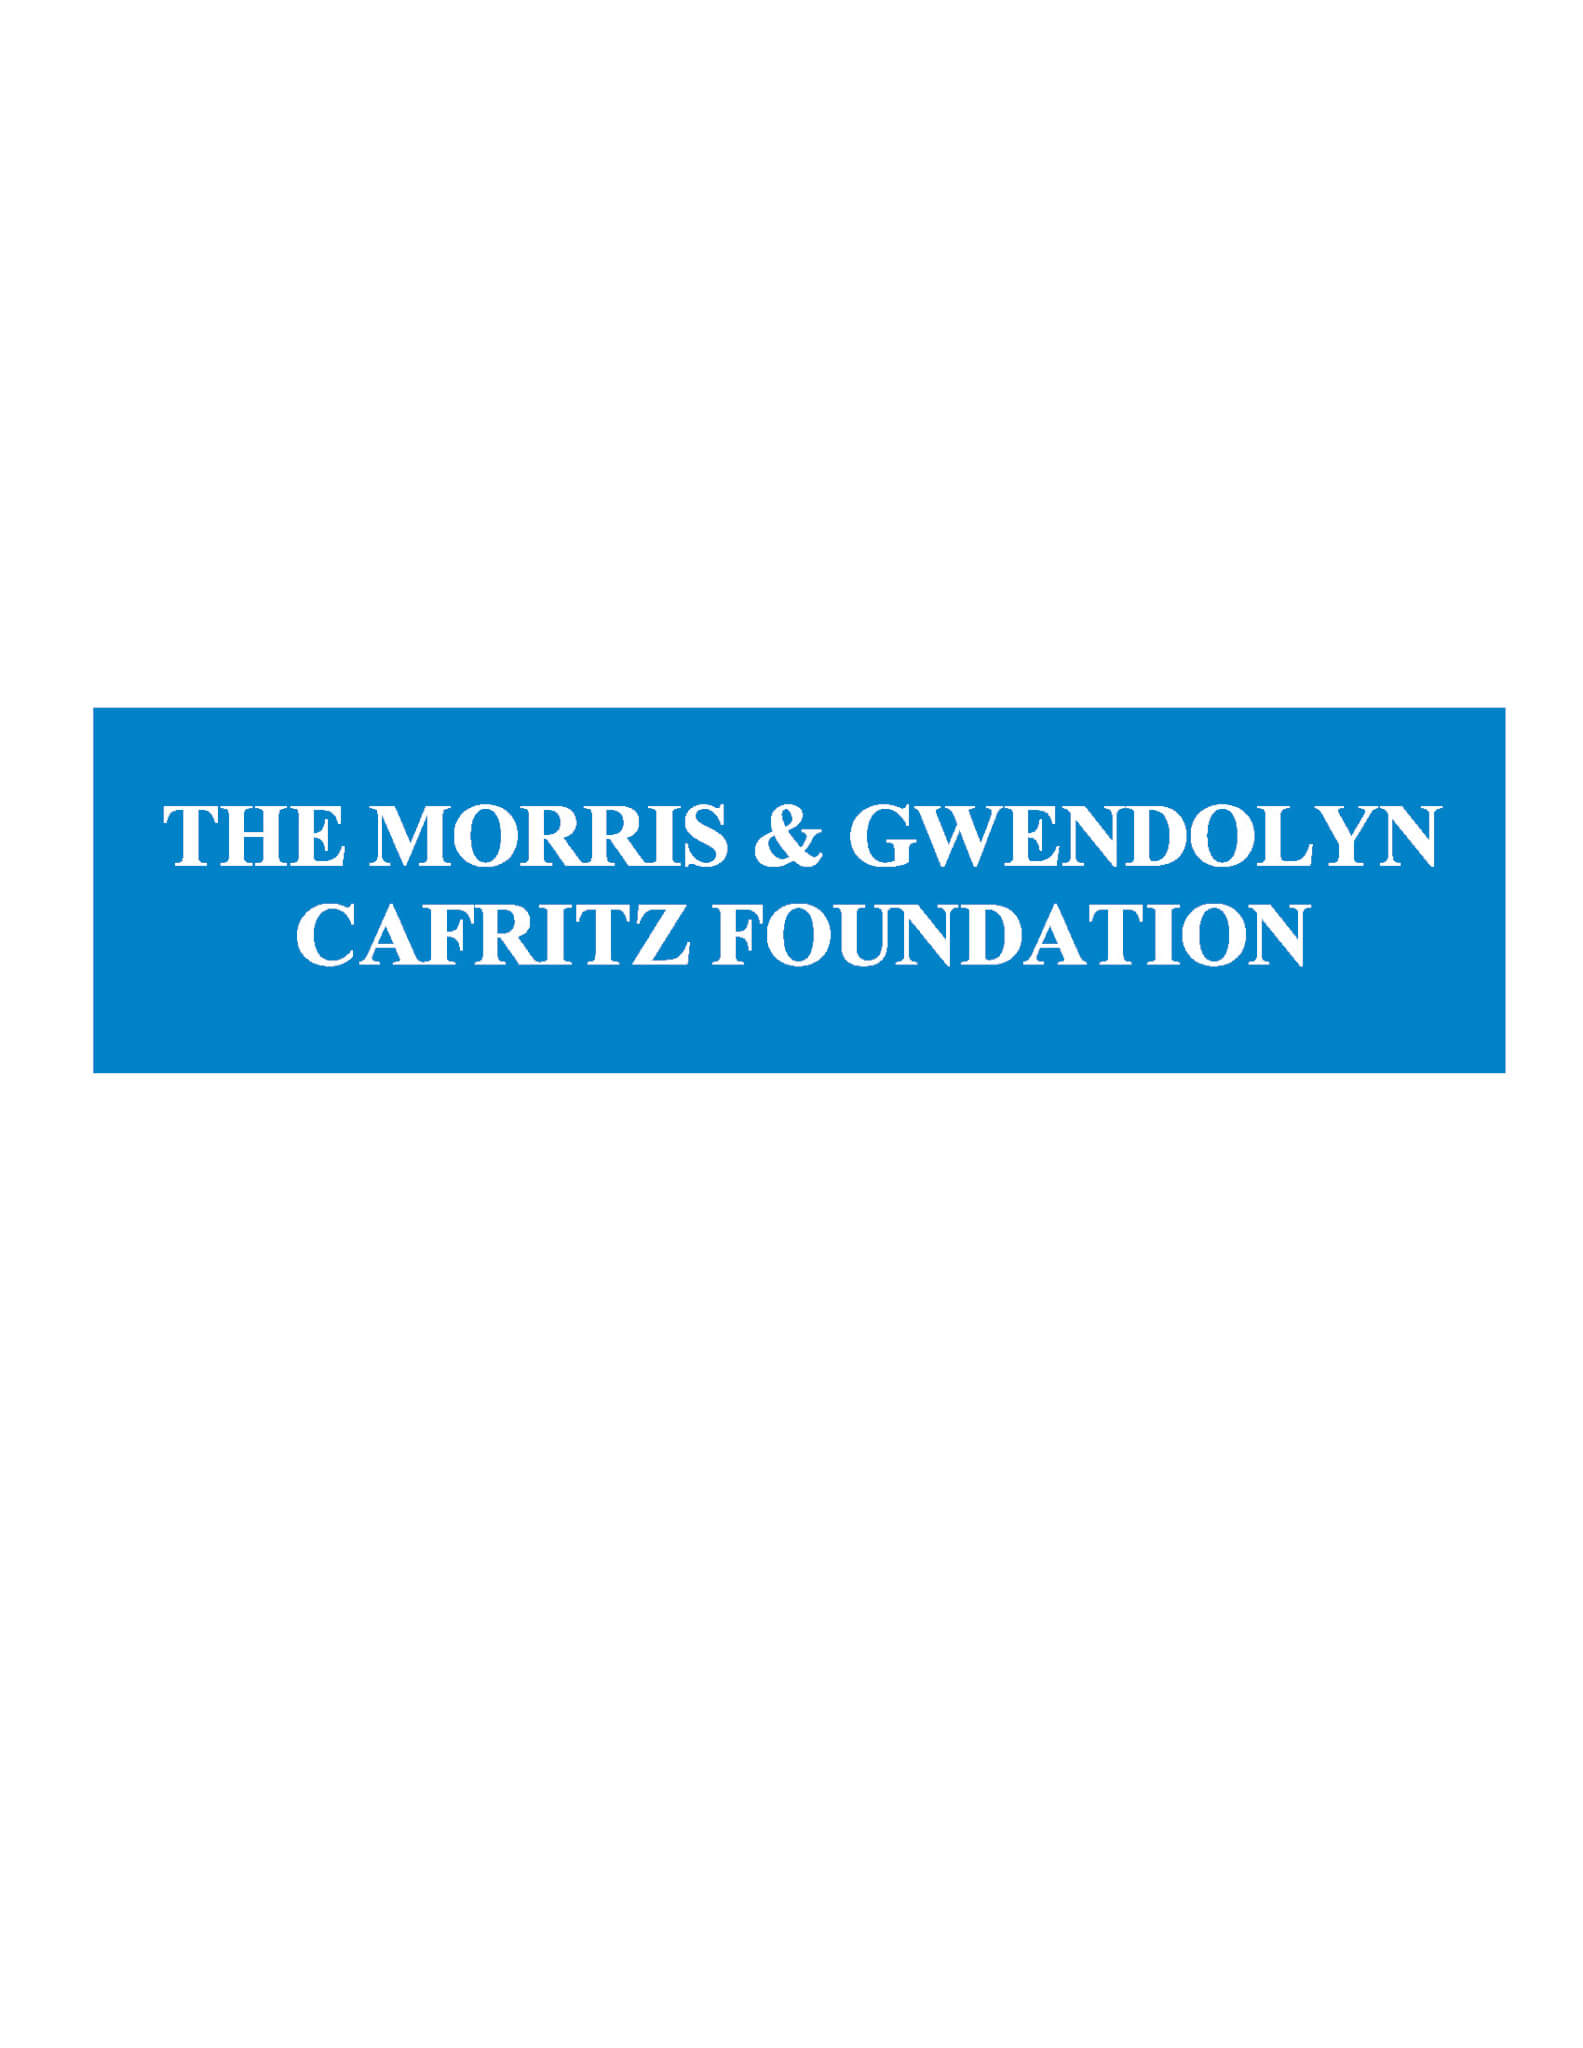 The Morris & Gwendolyn Cafritz Foundation